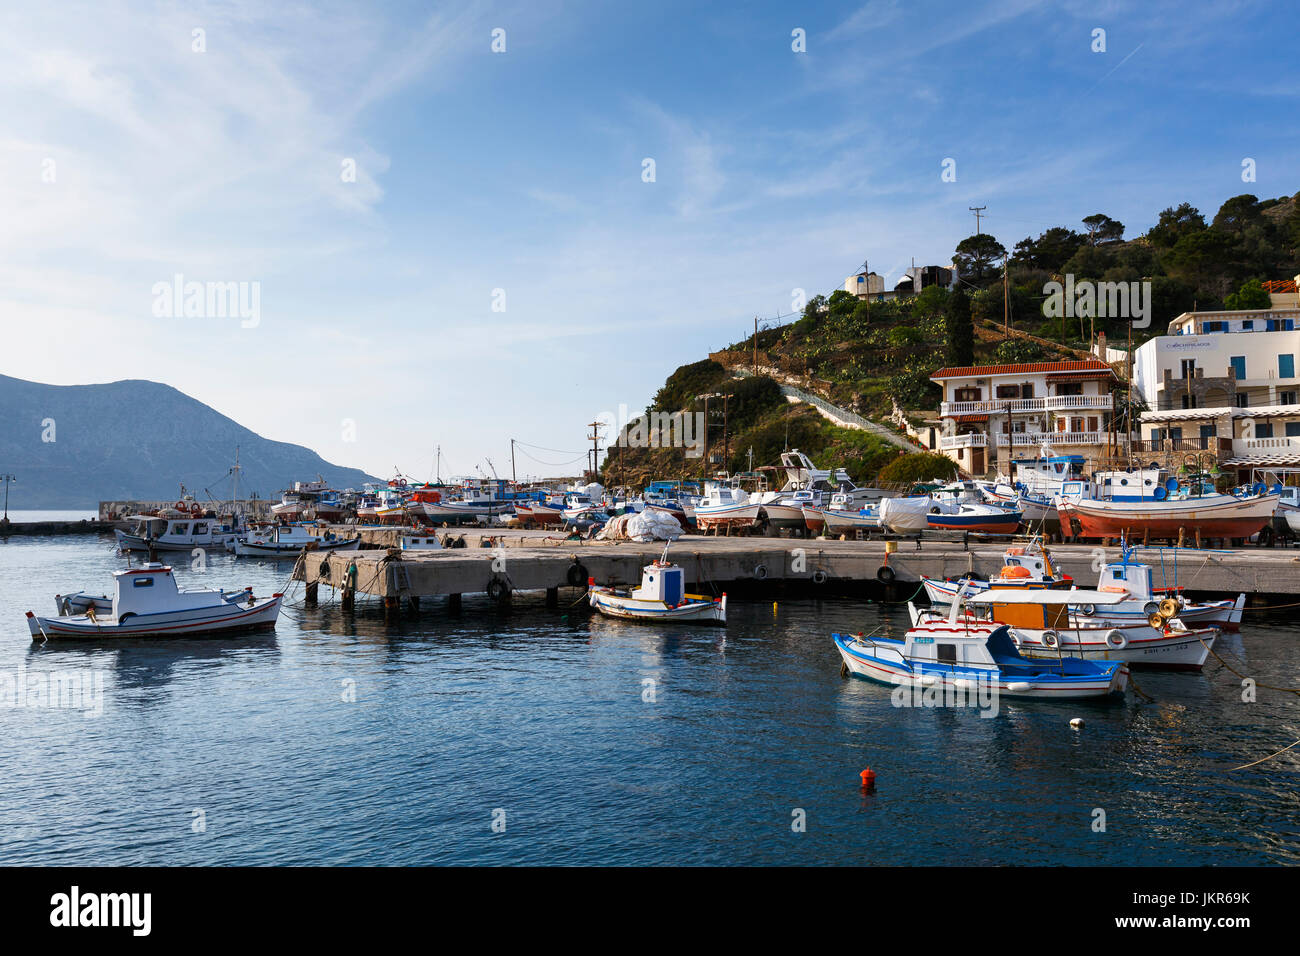 Port de la partie principale du village sur l'île de fourni, la Grèce. Banque D'Images